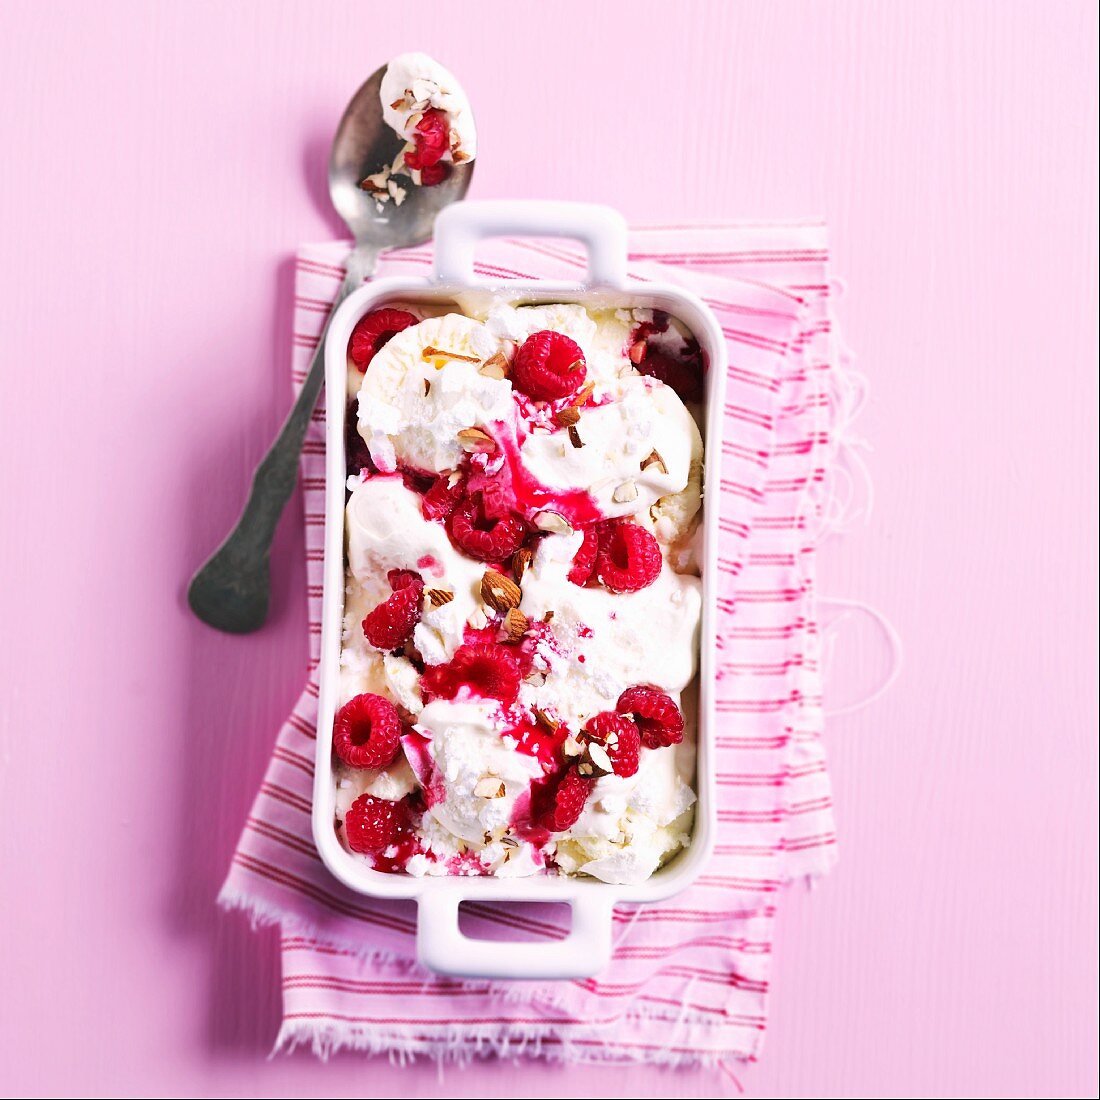 Raspberries and vanilla ice cream with meringue